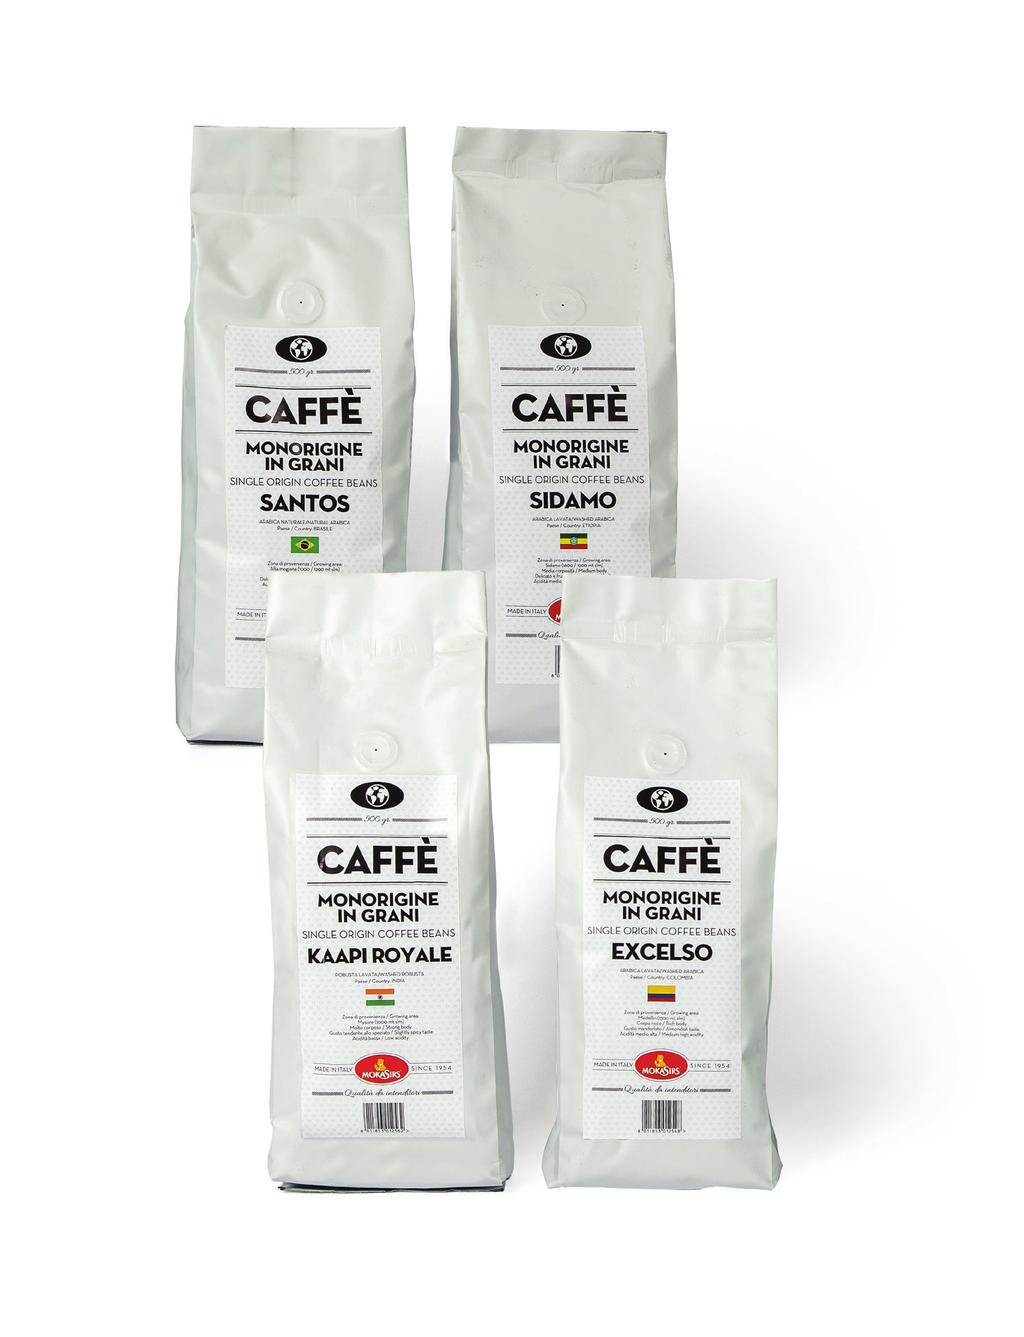 CAFFÈ IN GRANI COFFEE BEANS MONORIGINE il caffè monorigine non è una miscela, ma una singola varietà di caffè.